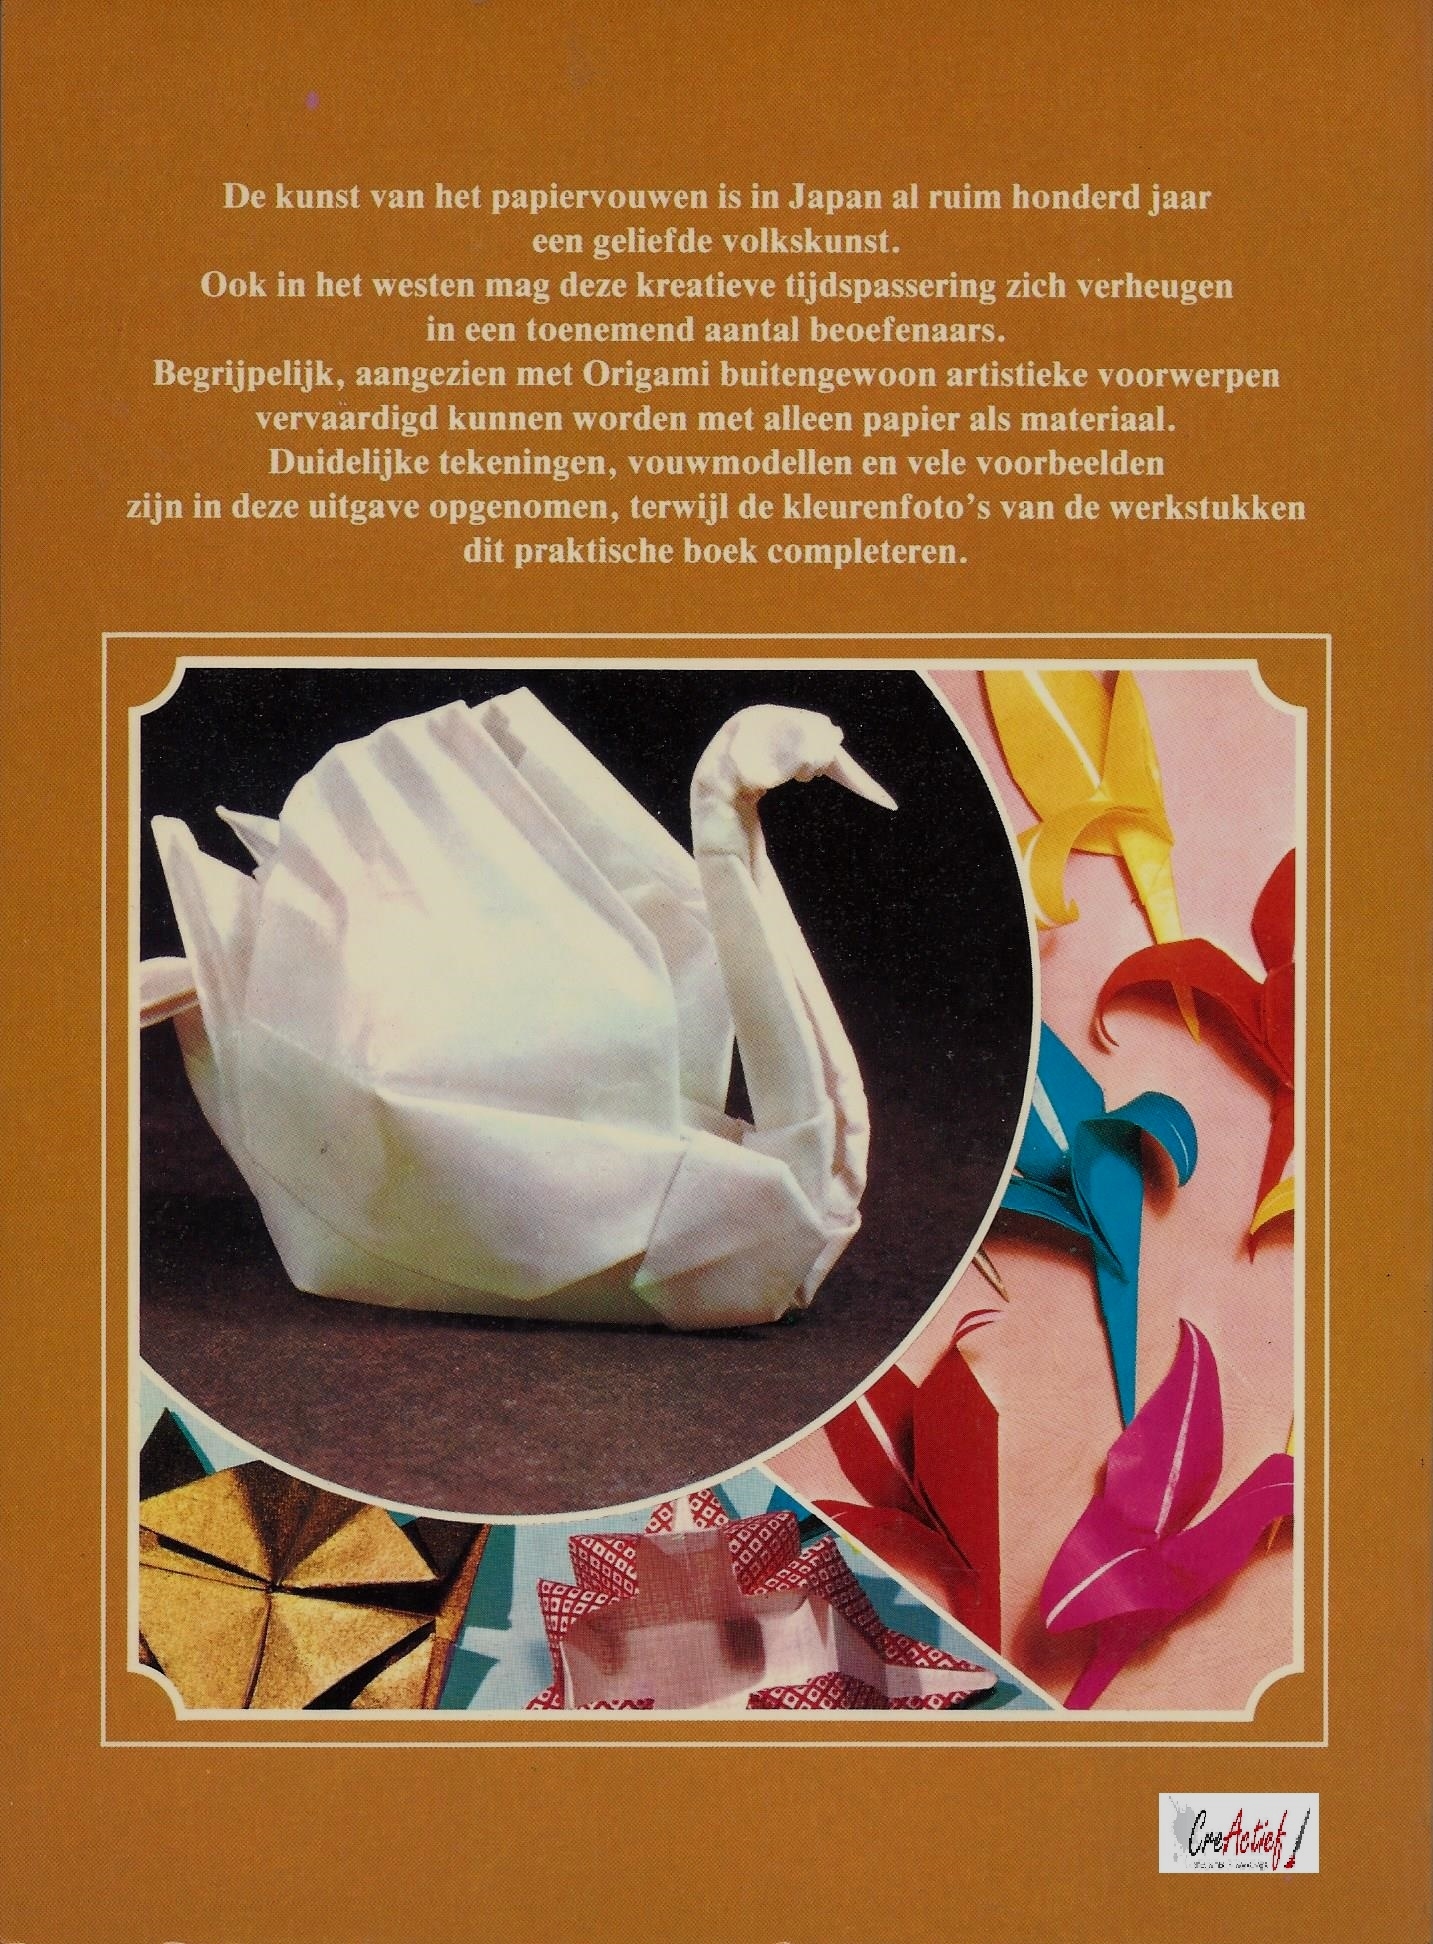 Origami, Japanse papiervouwkunst, Robert Harbin